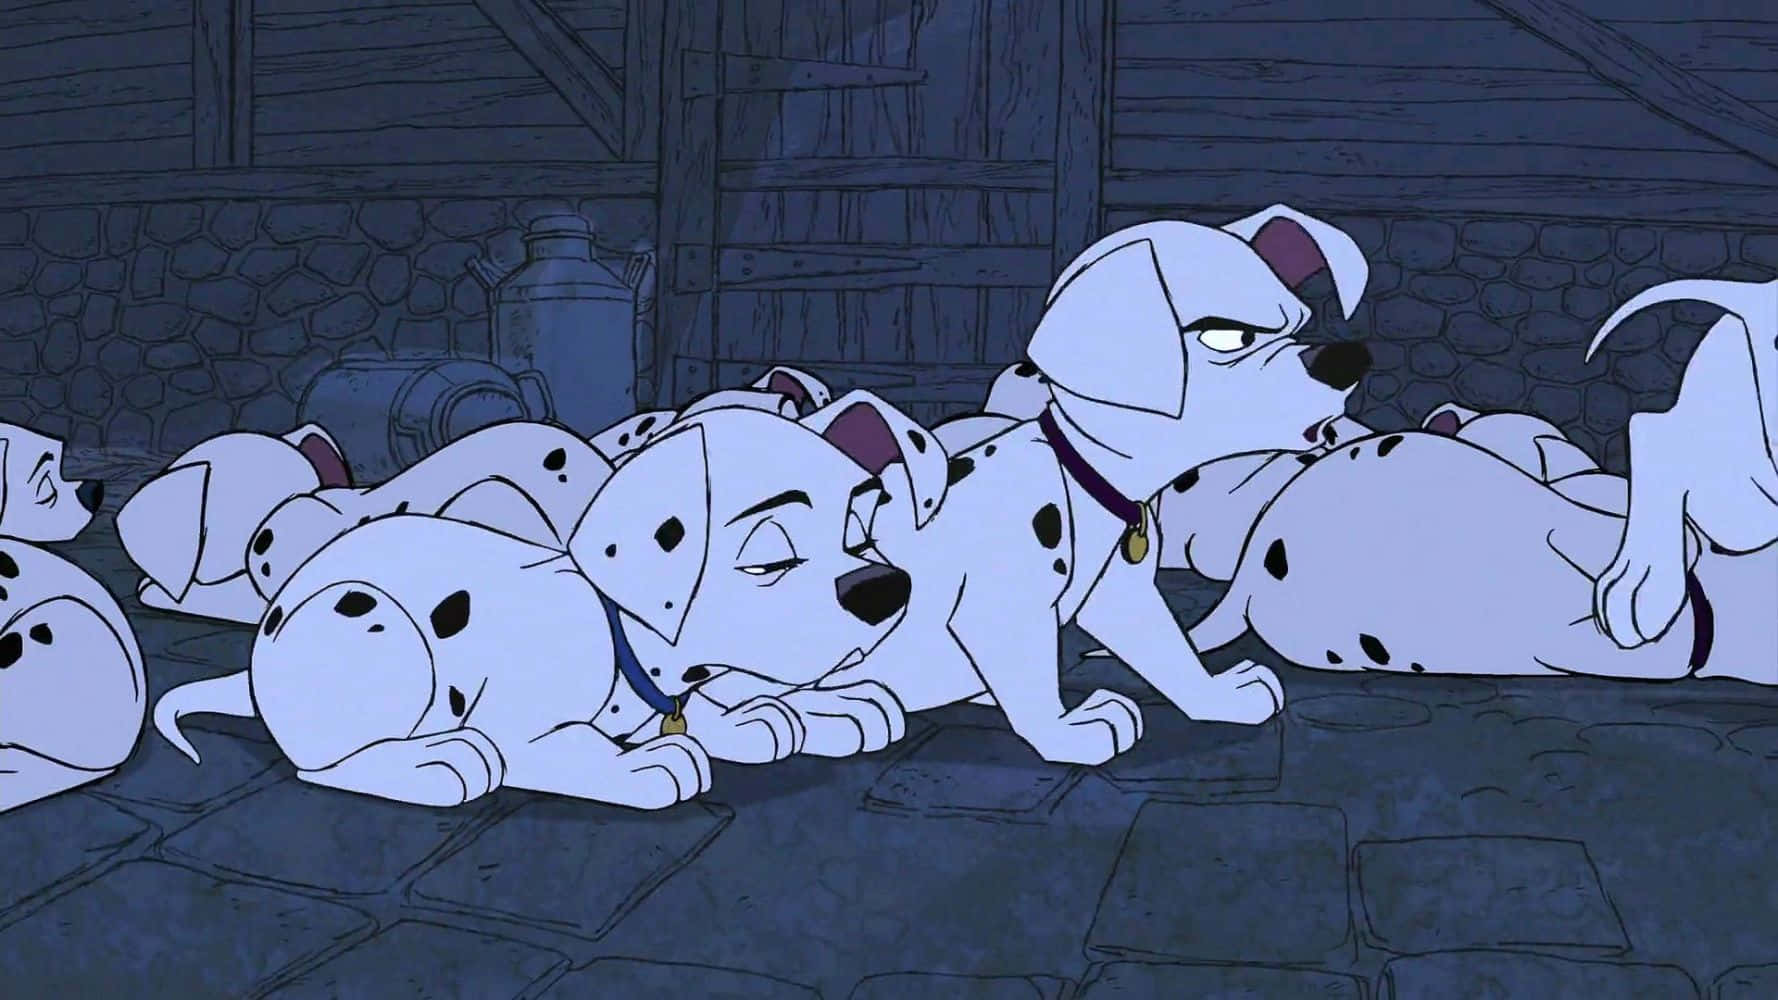 101 Dalmatians, a Classic Disney Tale